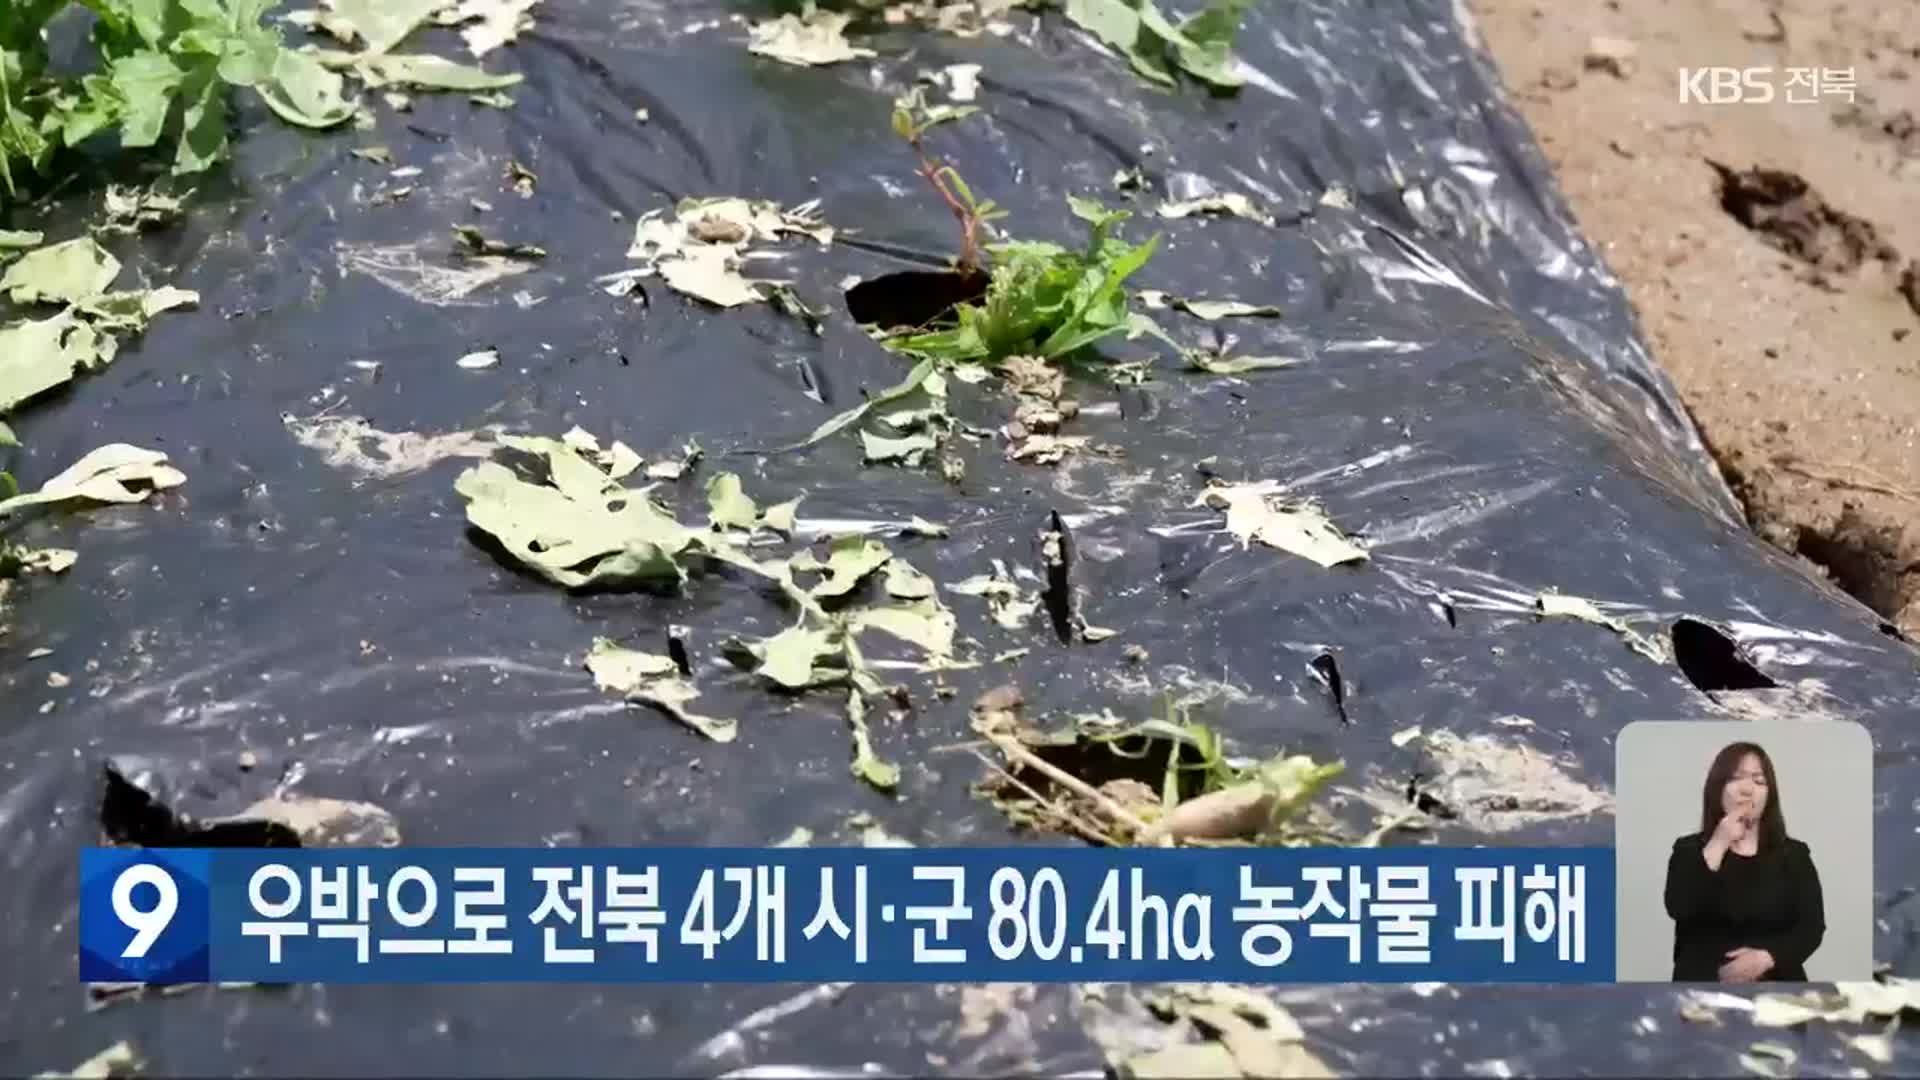 우박으로 전북 4개 시·군 80.4ha 농작물 피해